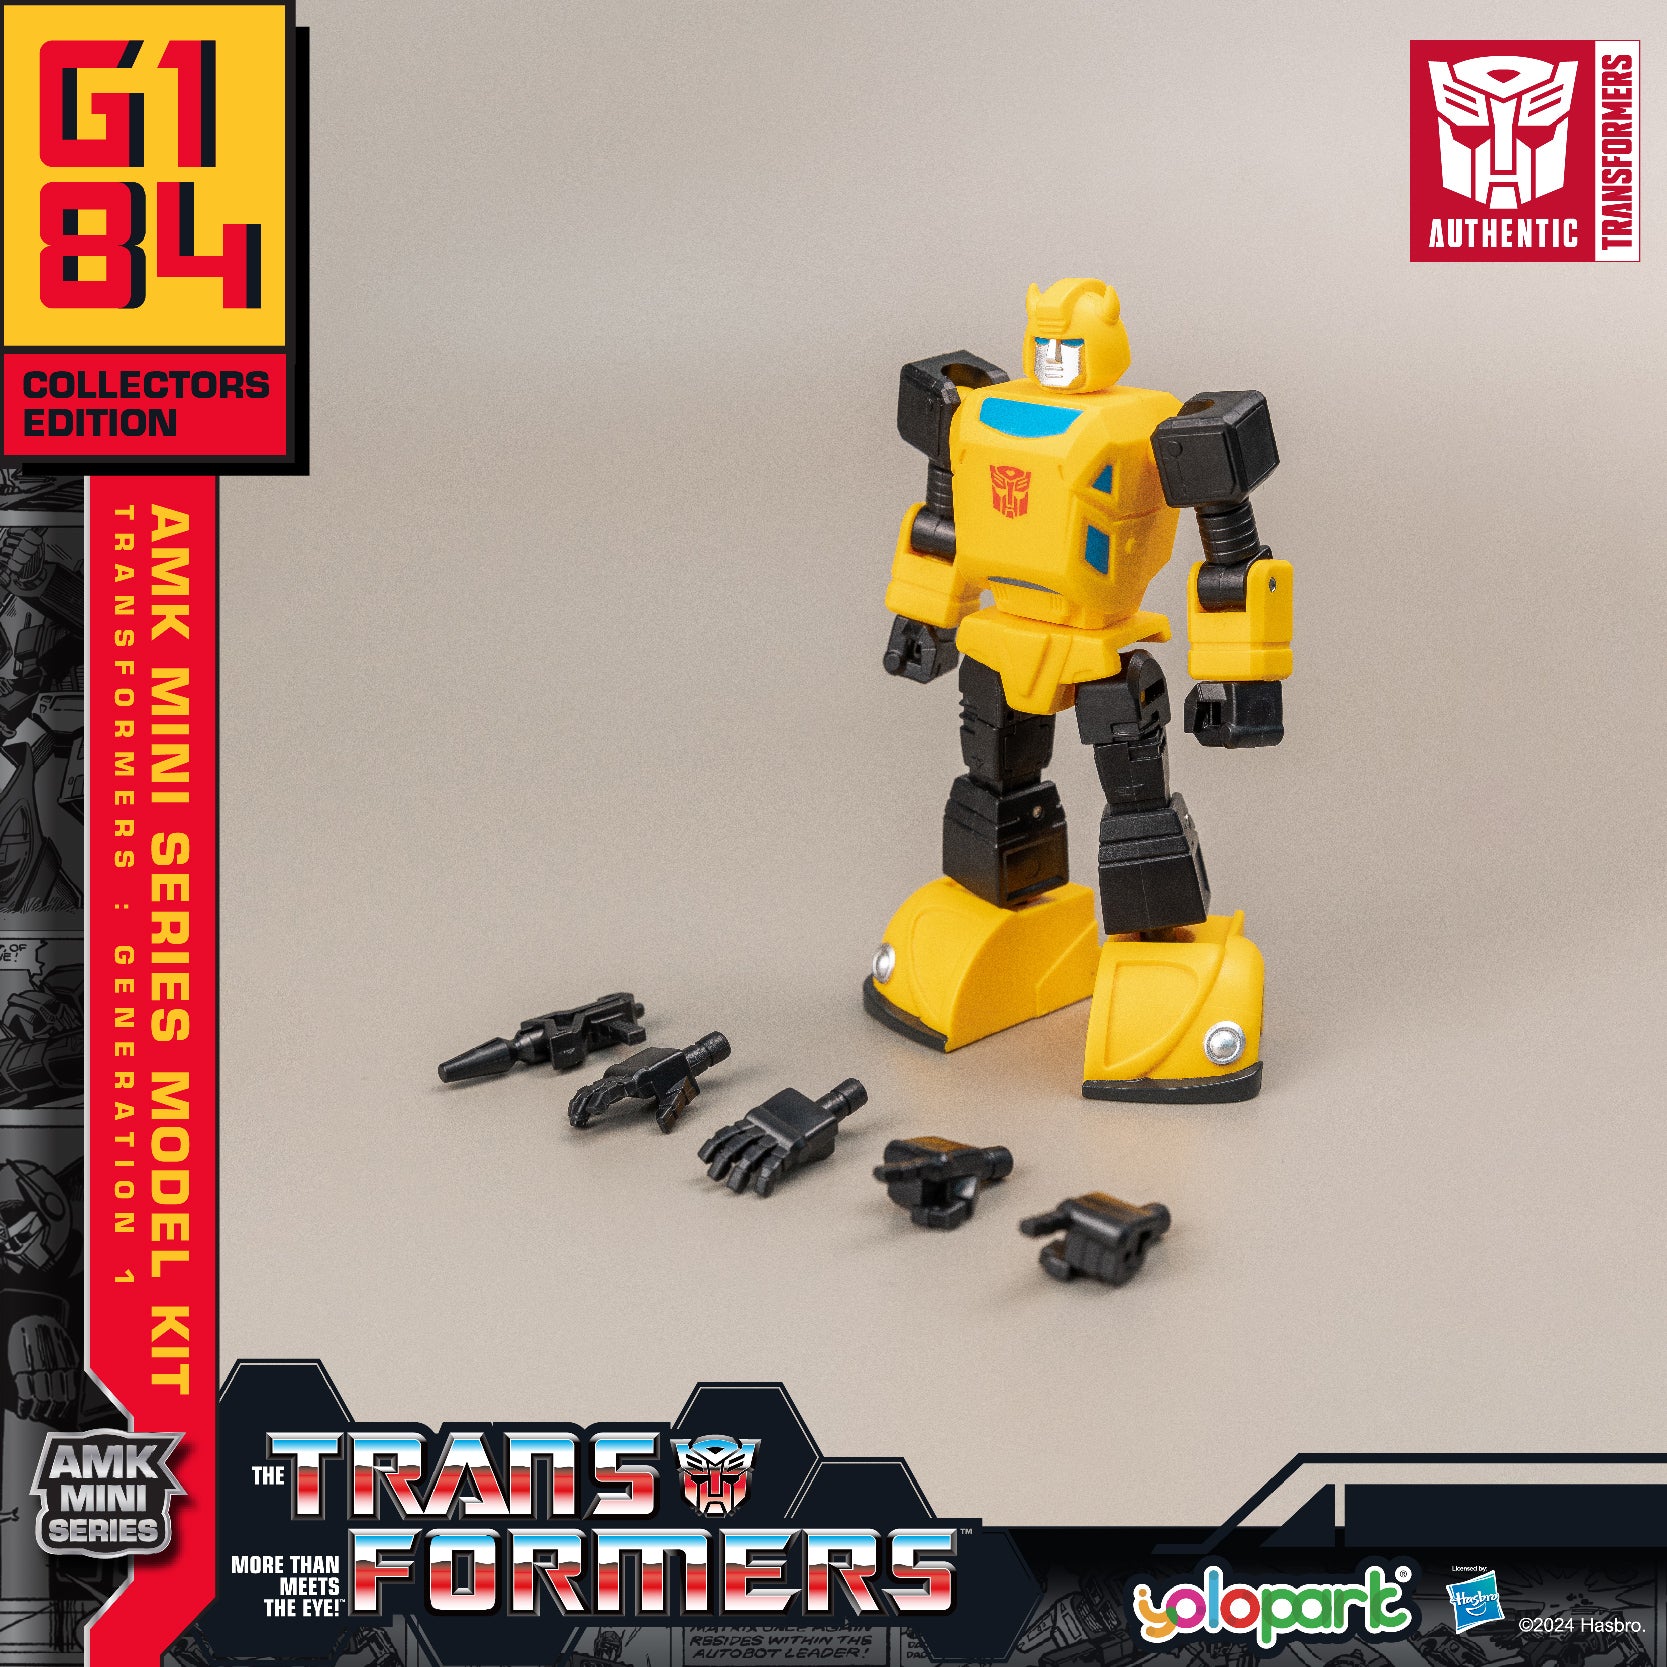 AMK MINI Series Transformers: Generation 1 Model Kits